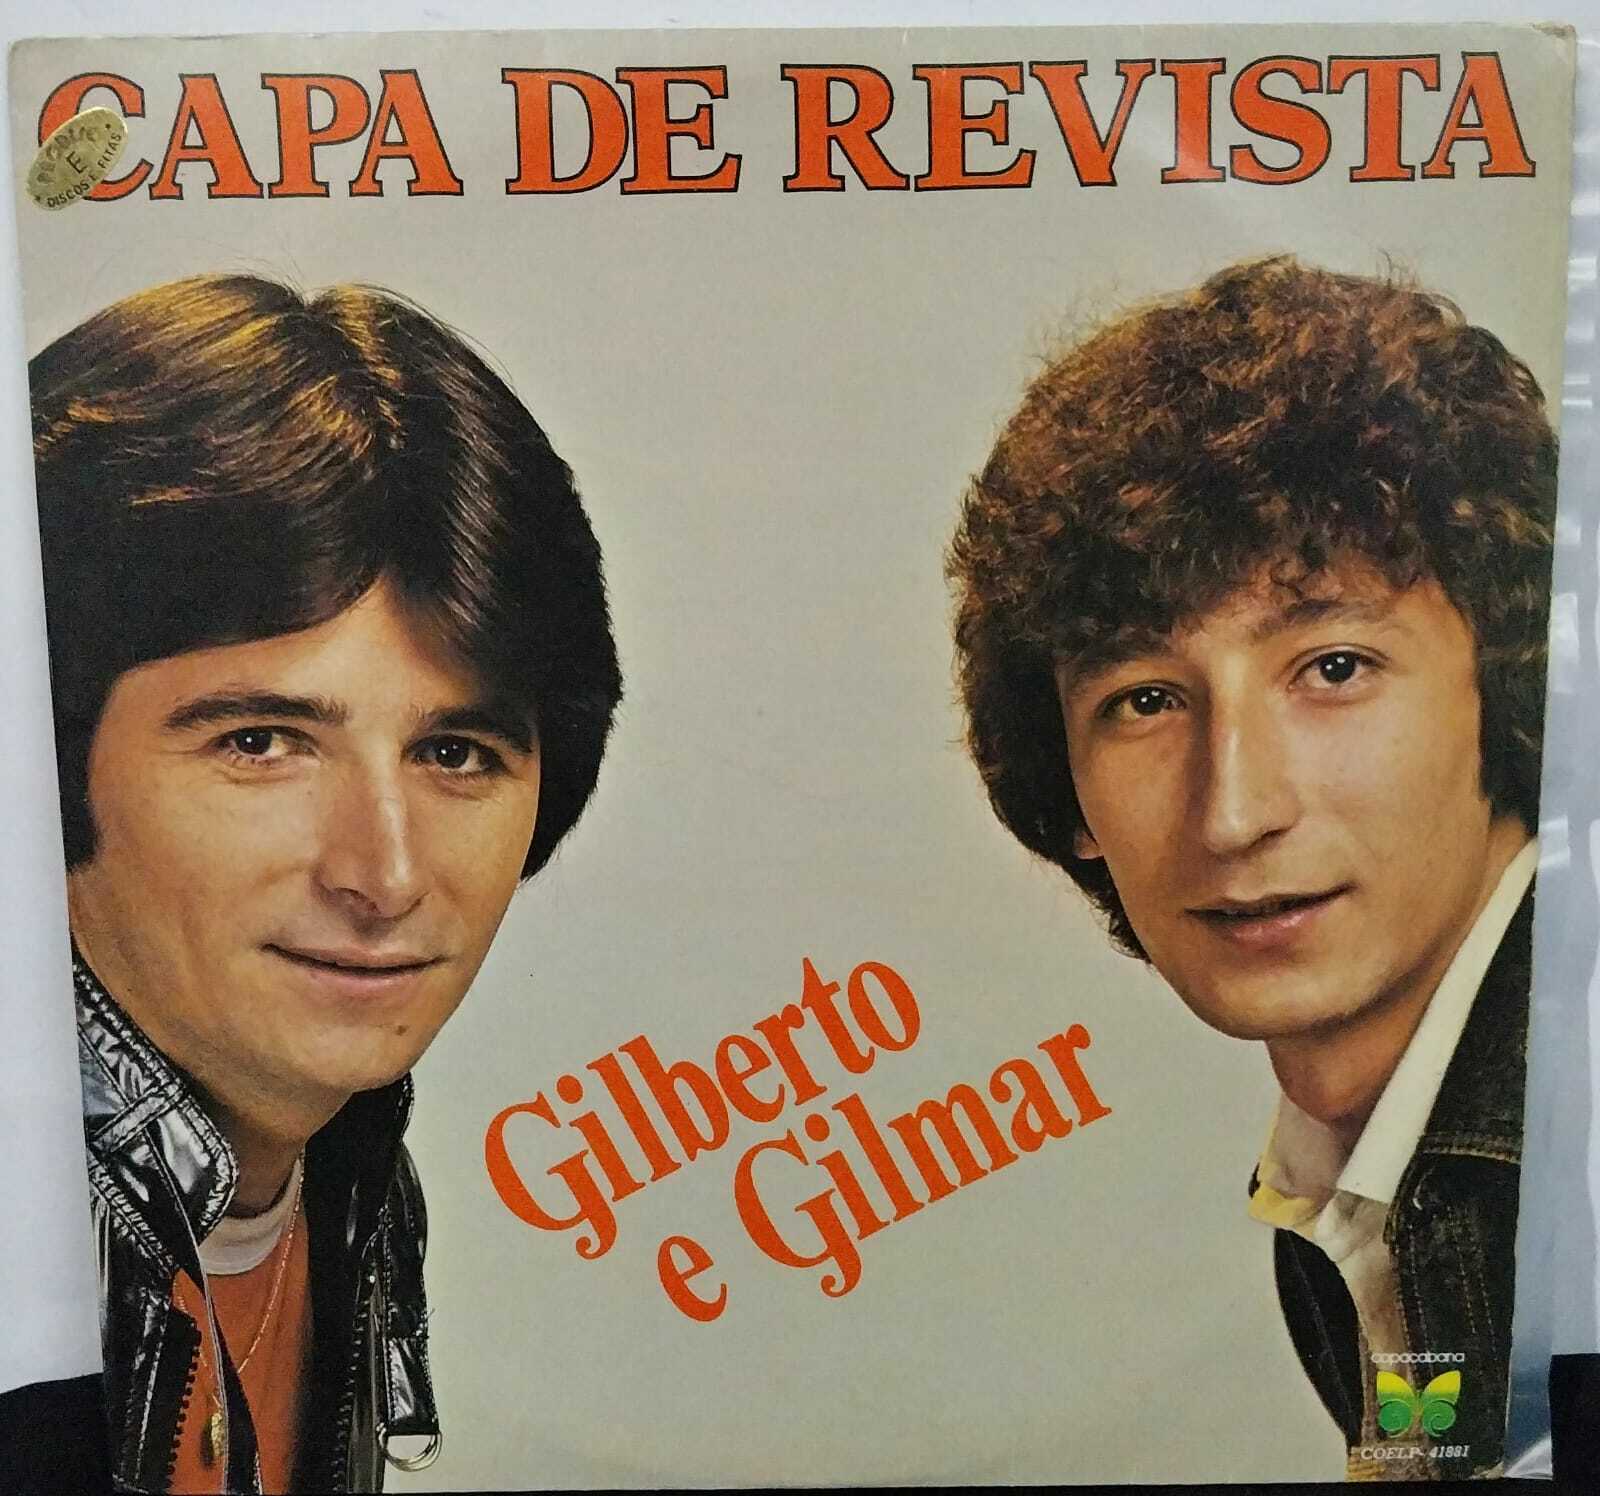 Vinil - Gilberto e Gilmar - Capa de Revista